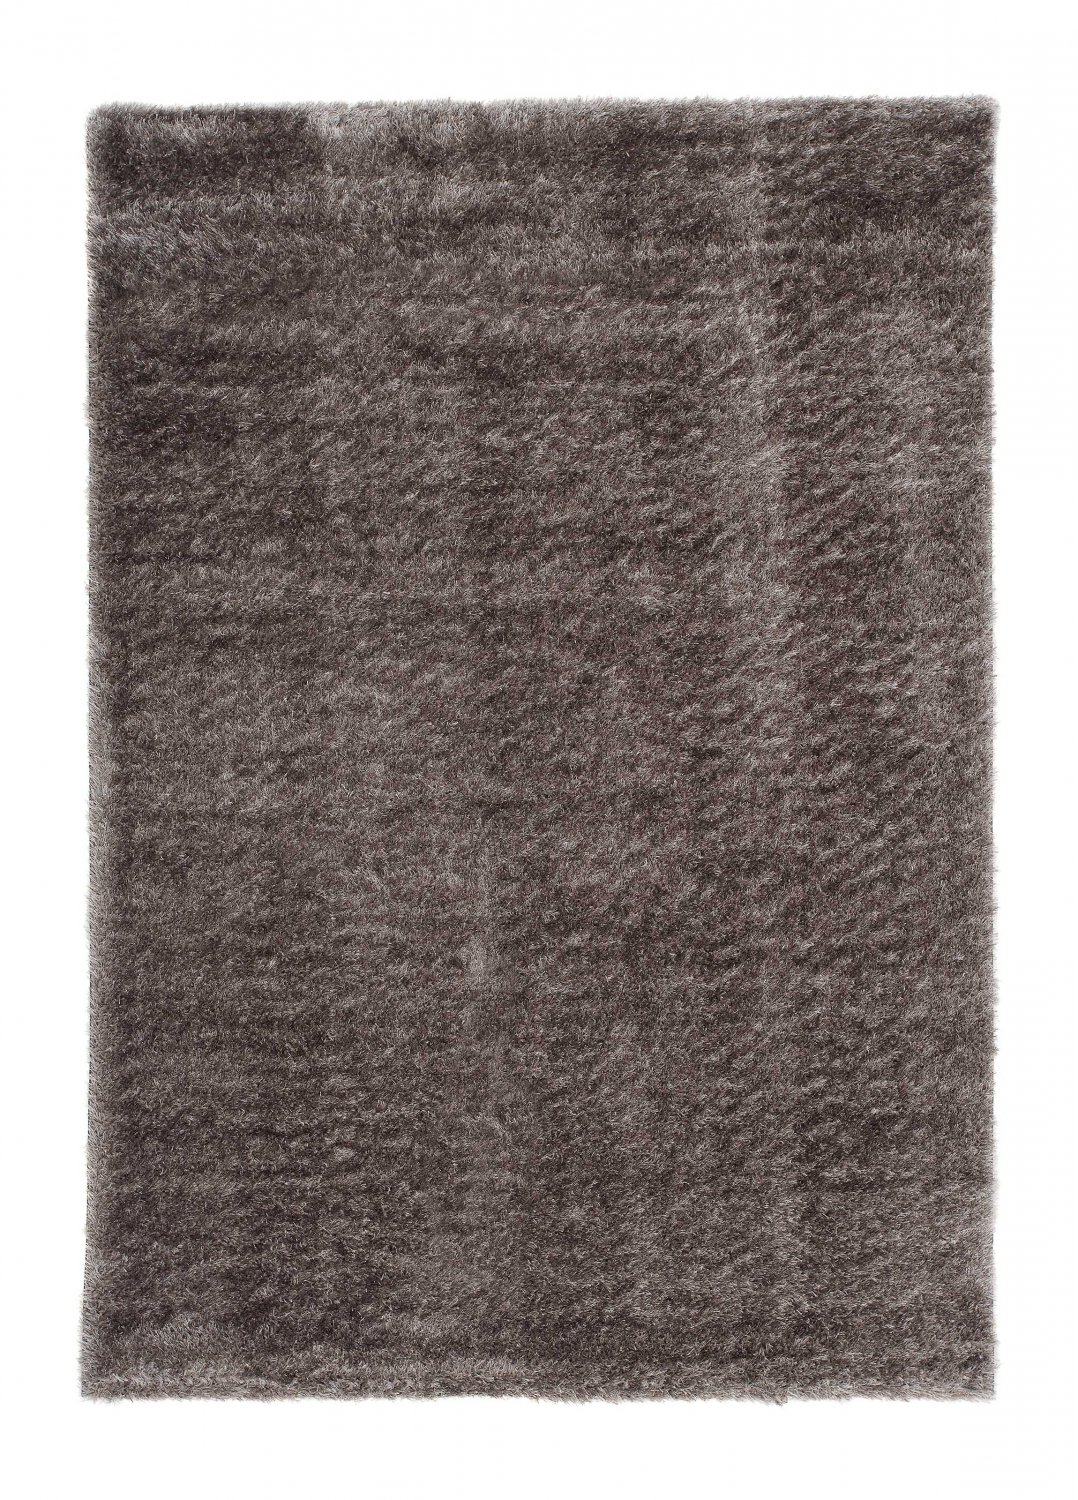 Safir hochflorteppich grau shaggy teppich rund hochflor wohnzimmer 60x120 cm 80x 150 cm 140x200 cm 160x230 cm 200x300 cm